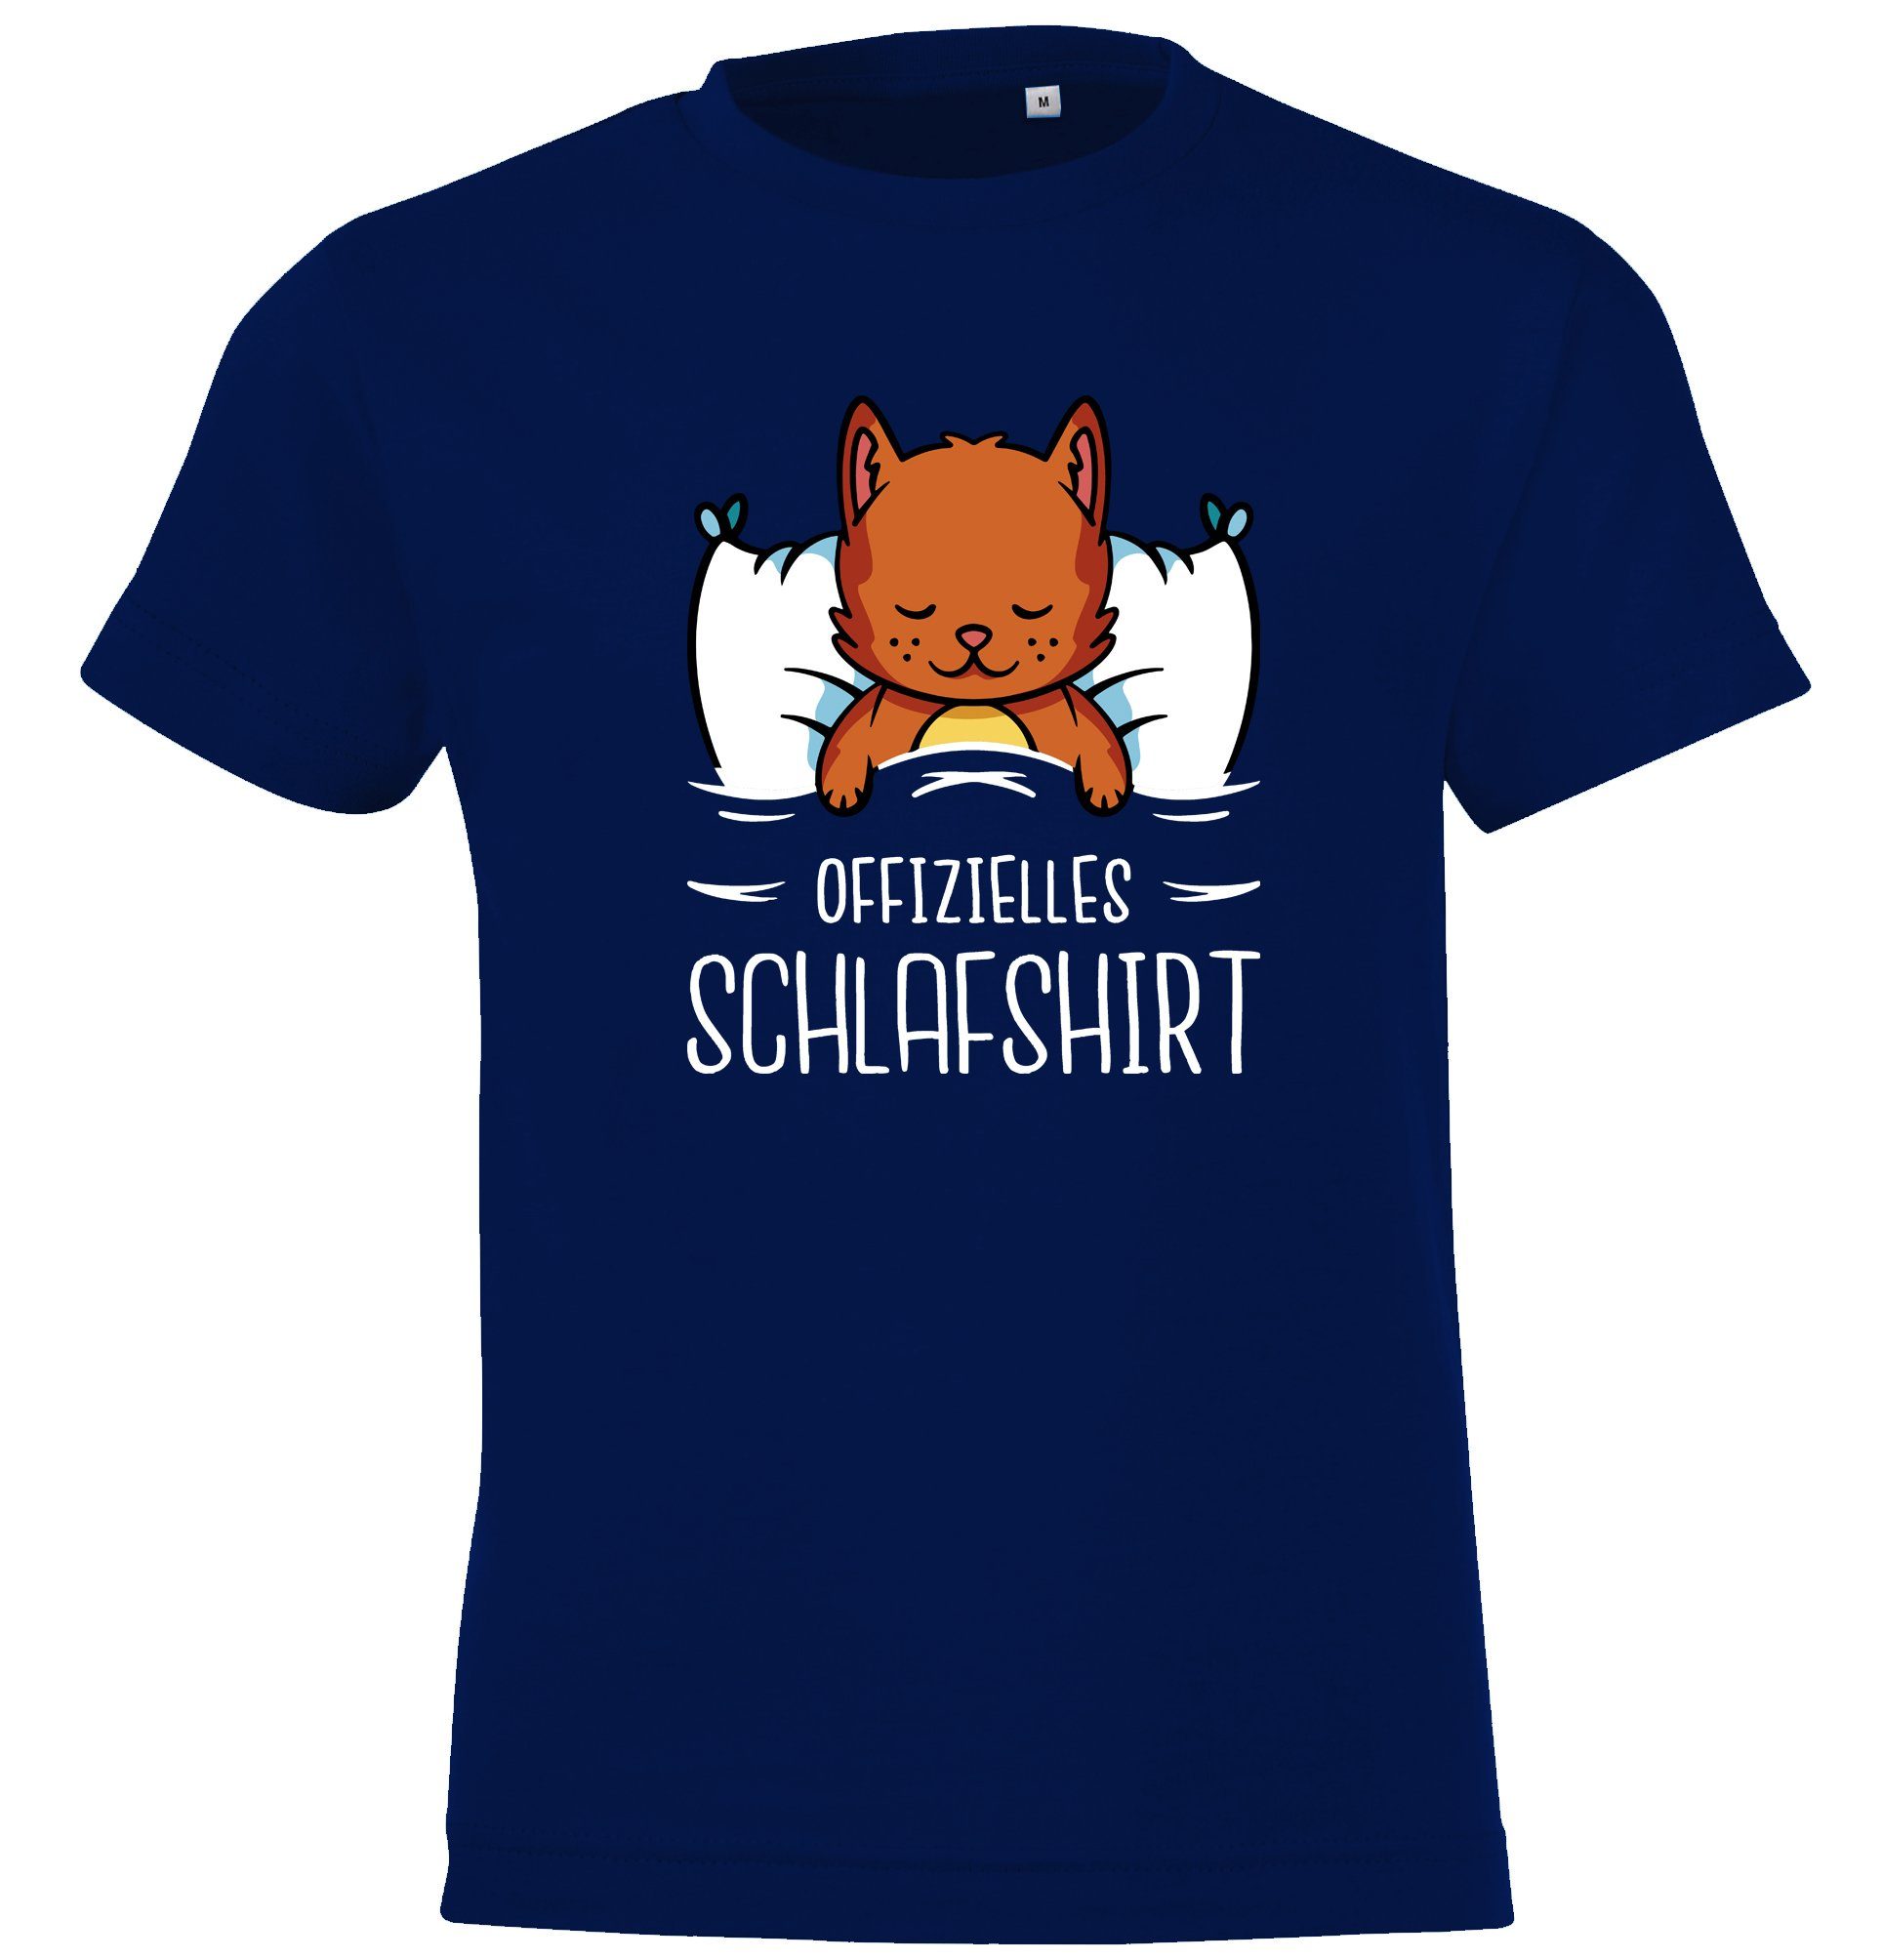 Mädchen mit und Jungen für Navy Frontprint T-Shirt Youth Katze Kinder Designz Shirt Schlafshirt Offizielles mit lustigem